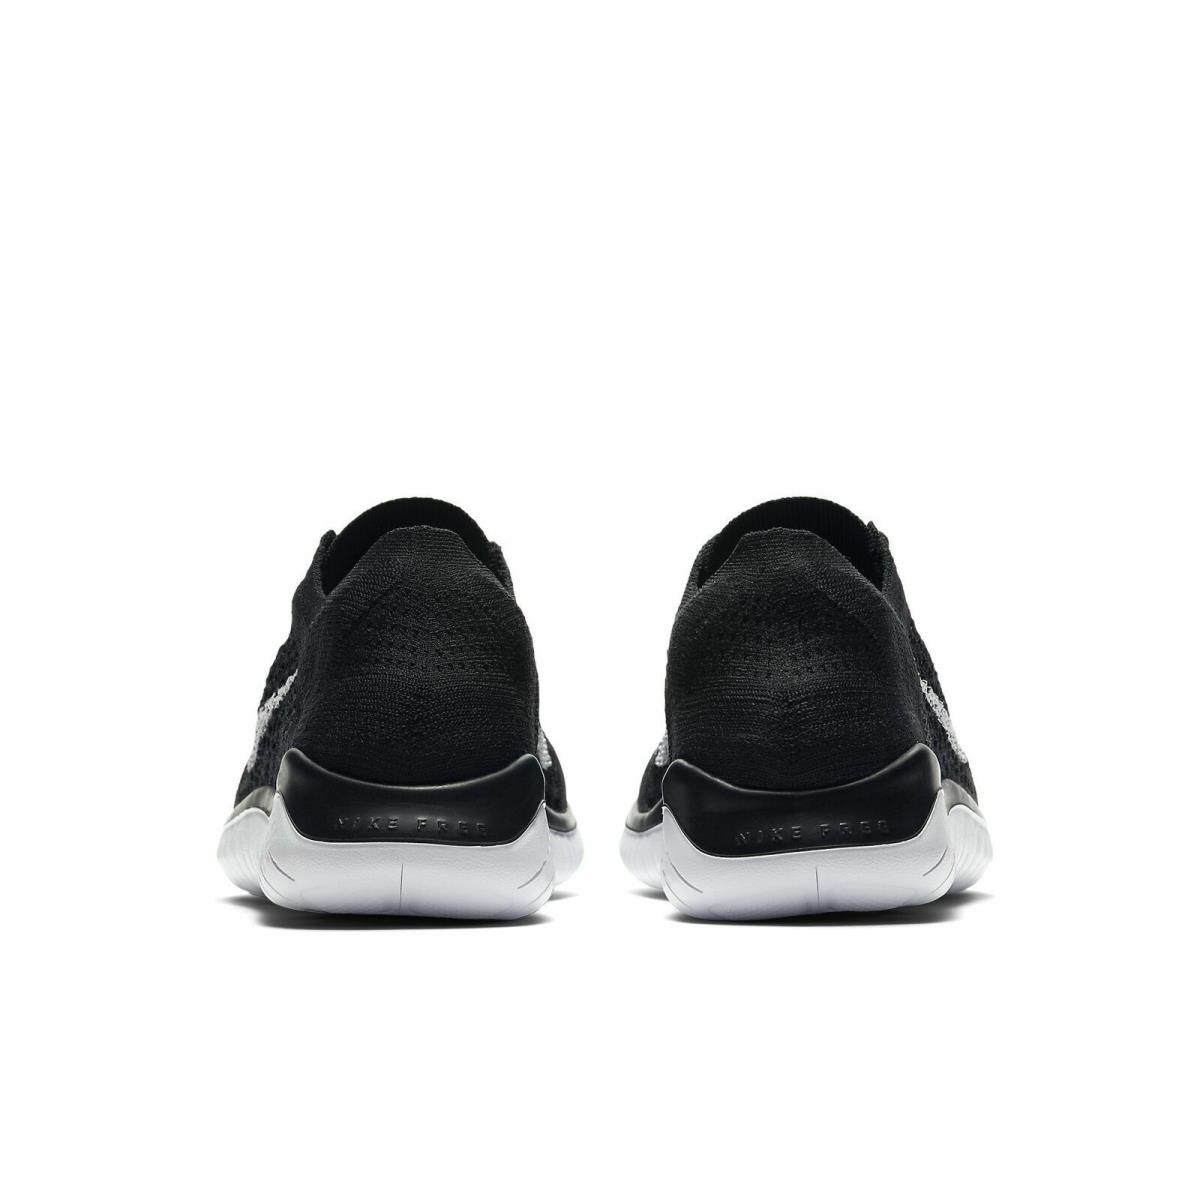 Nike shoes Free Flyknit - Black / White 4